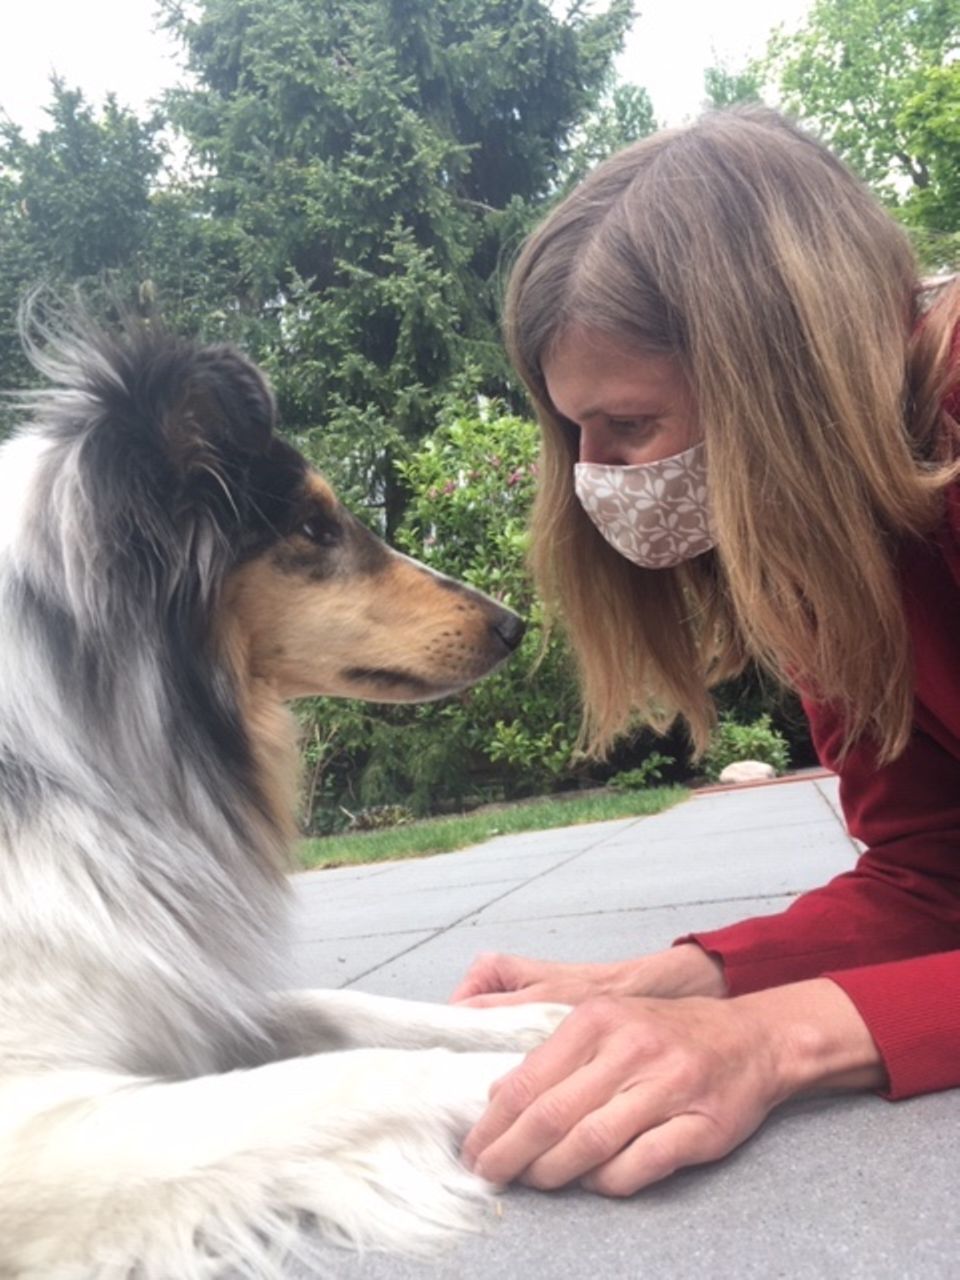 "Ein Schutz fürs Leben": Frau mit Maske und Hund